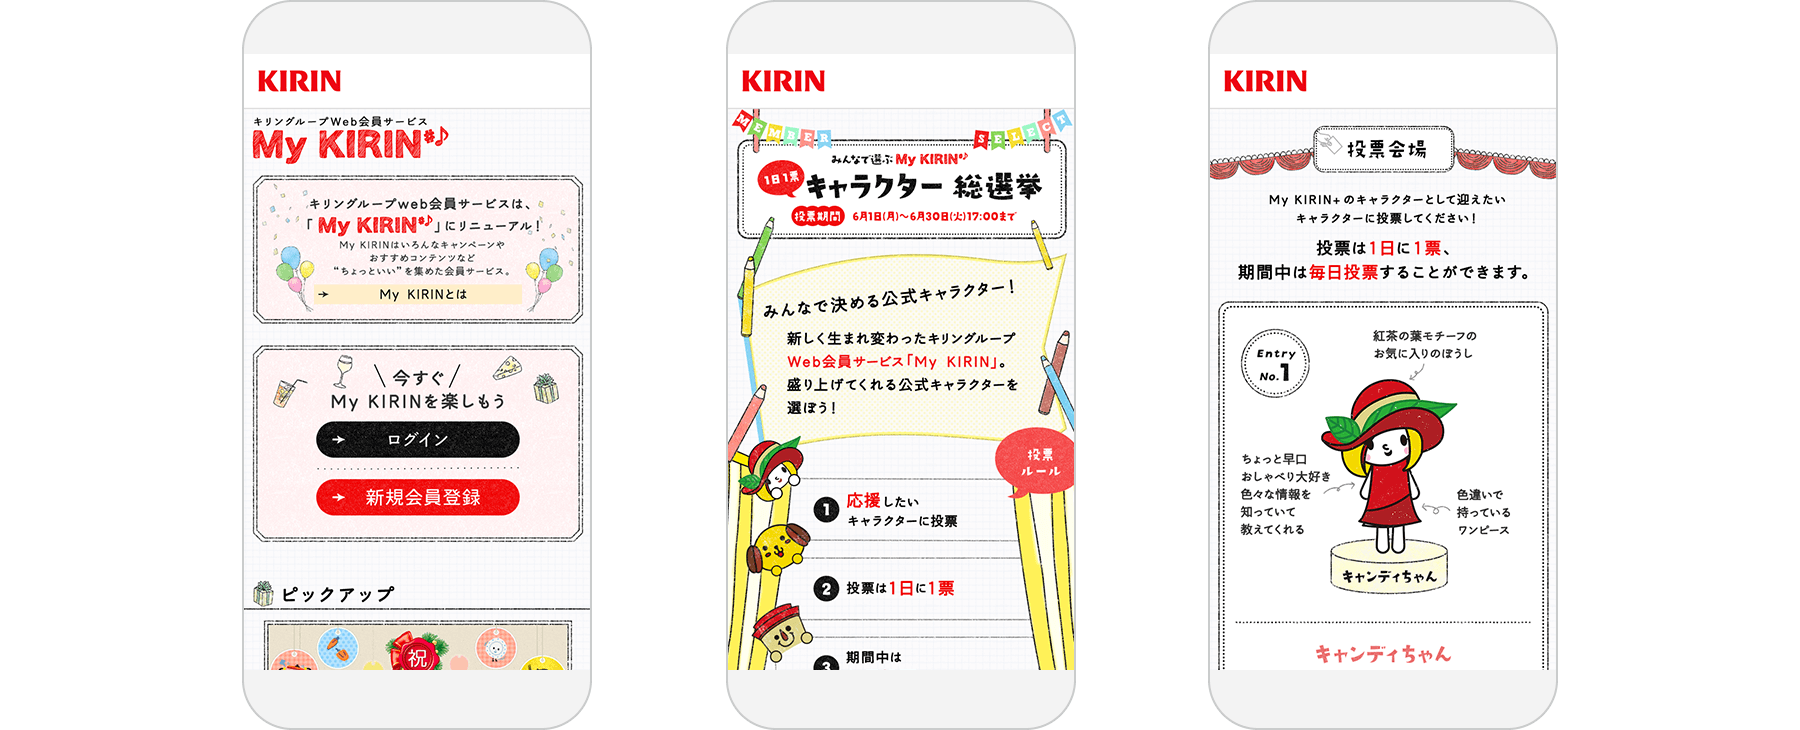 KIRIN group ”My KIRIN” / Web Member Services